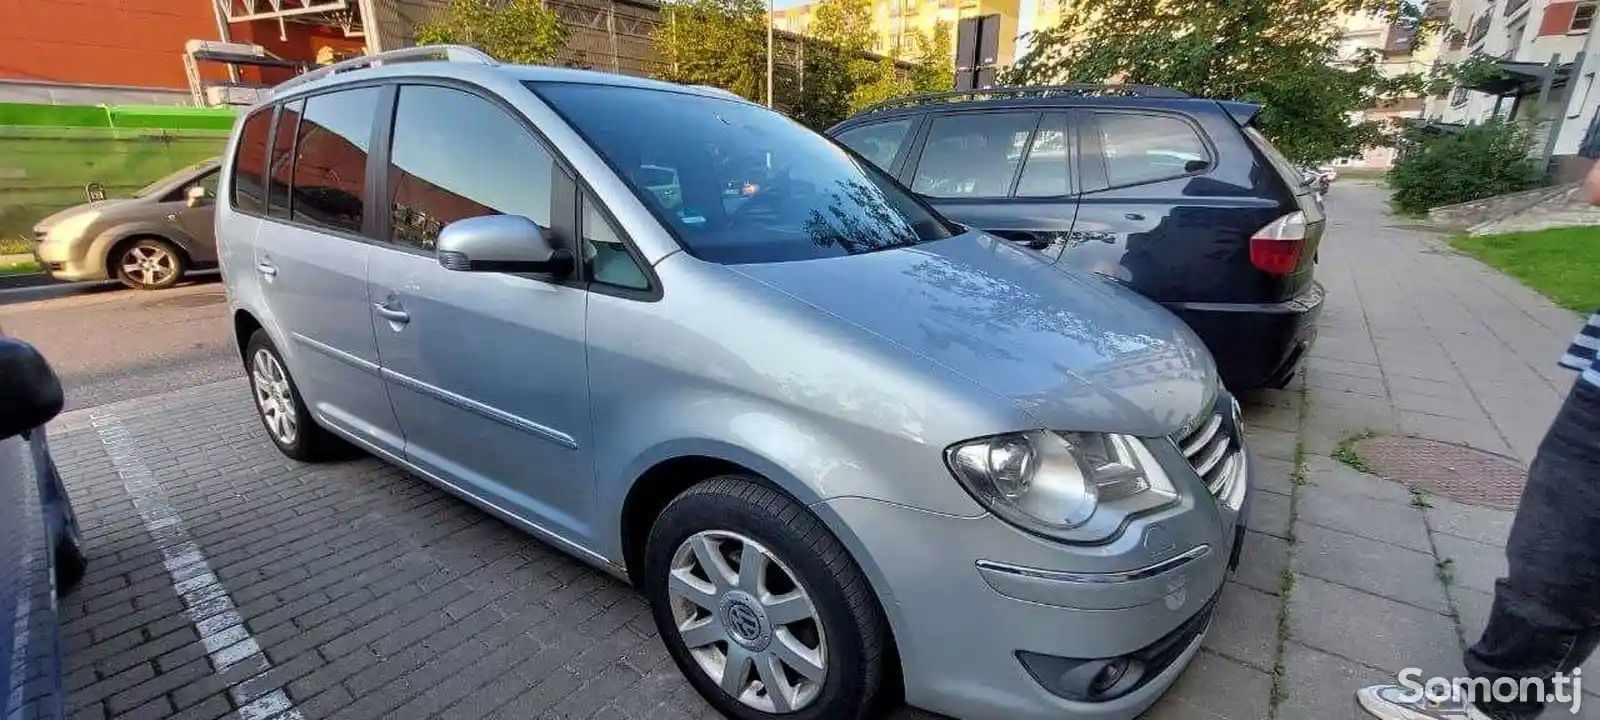 Volkswagen Touran, 2007-5